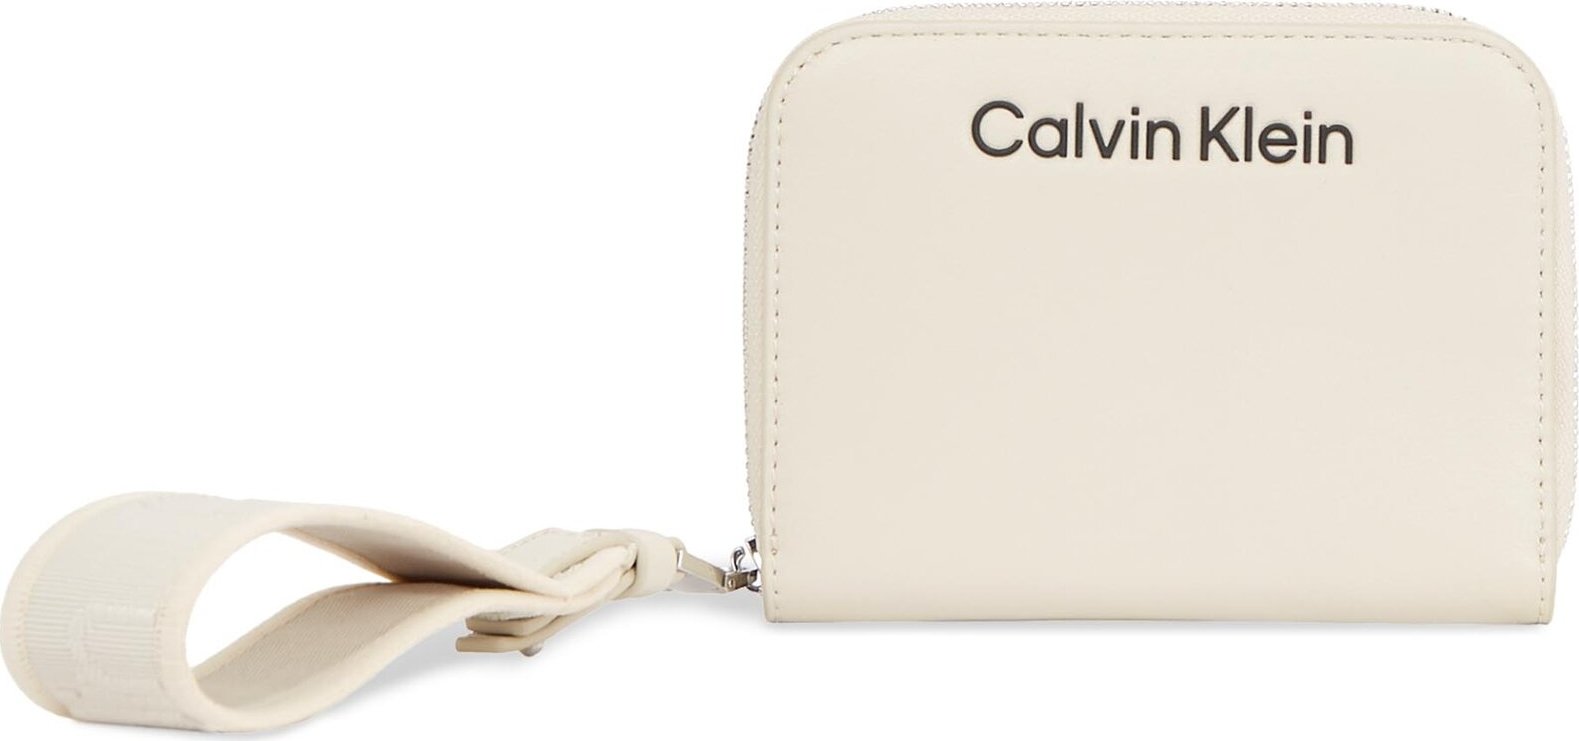 Velká dámská peněženka Calvin Klein Gracie K60K611688 Dk Ecru PC4